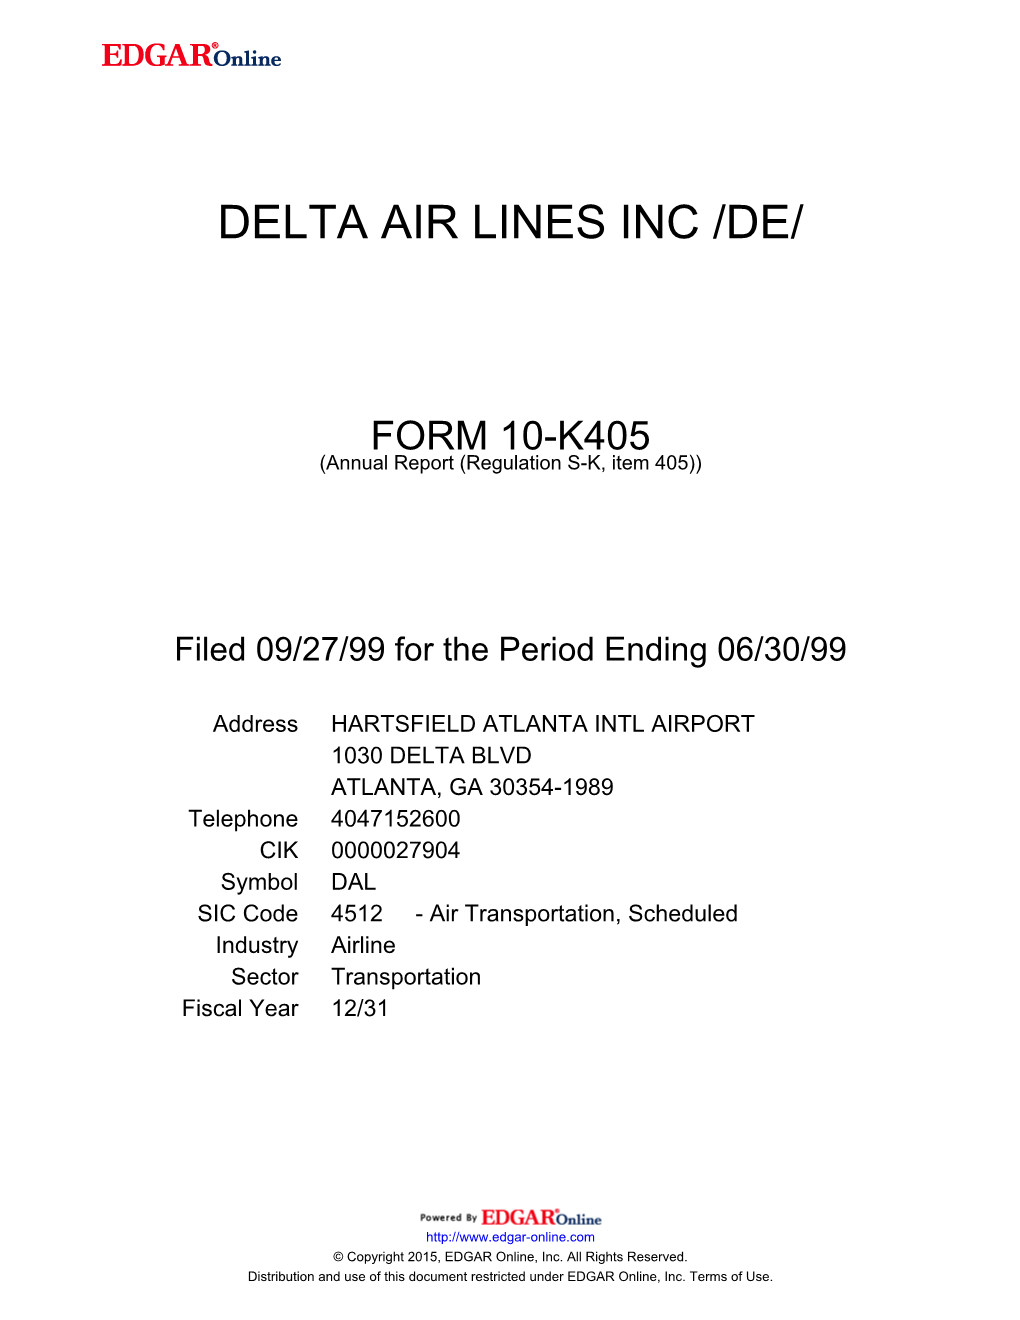 Delta Air Lines Inc /De